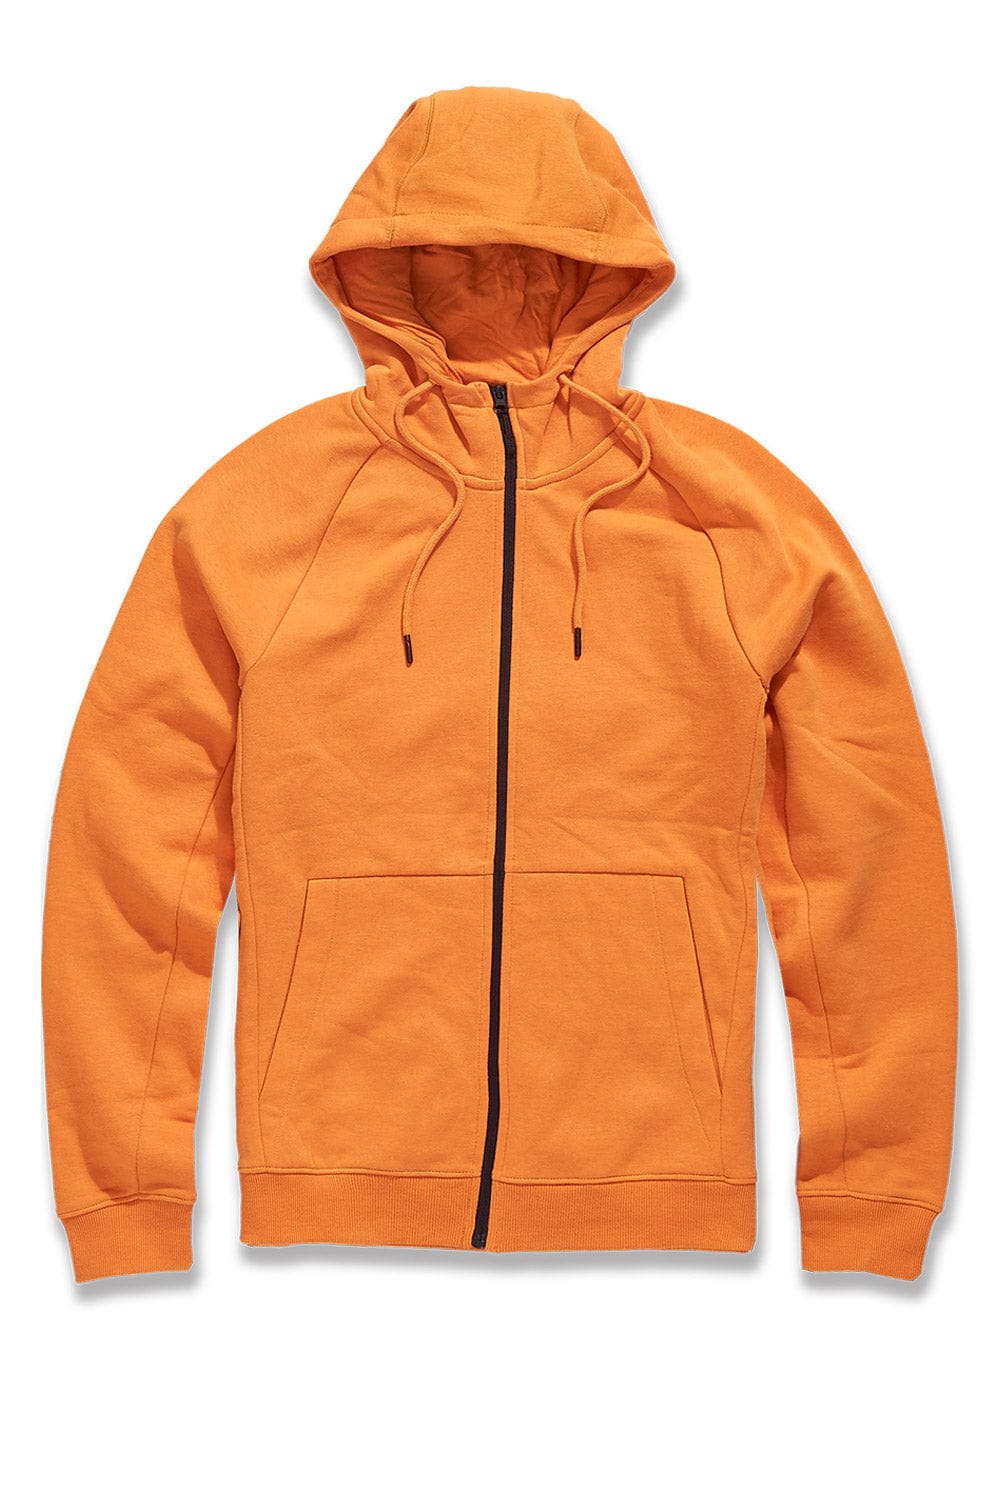 Jordan Craig Uptown Zip Up Hoodie (Orange) Orange / S